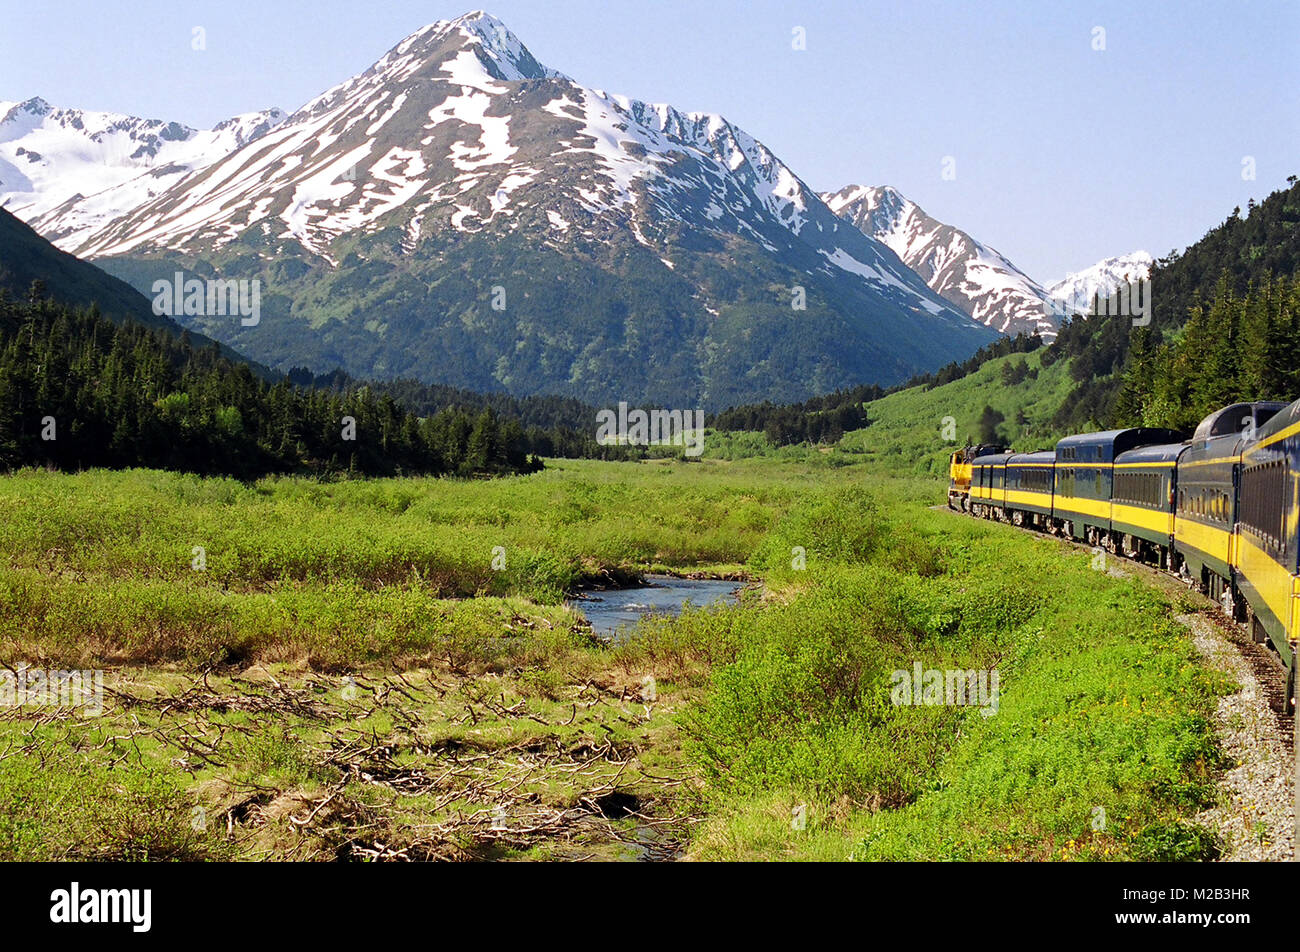 La magnifique nature montagneuse enneigée de l'Alaska, vue depuis la dernière voiture de ce train, en route vers le parc national Denali. Banque D'Images